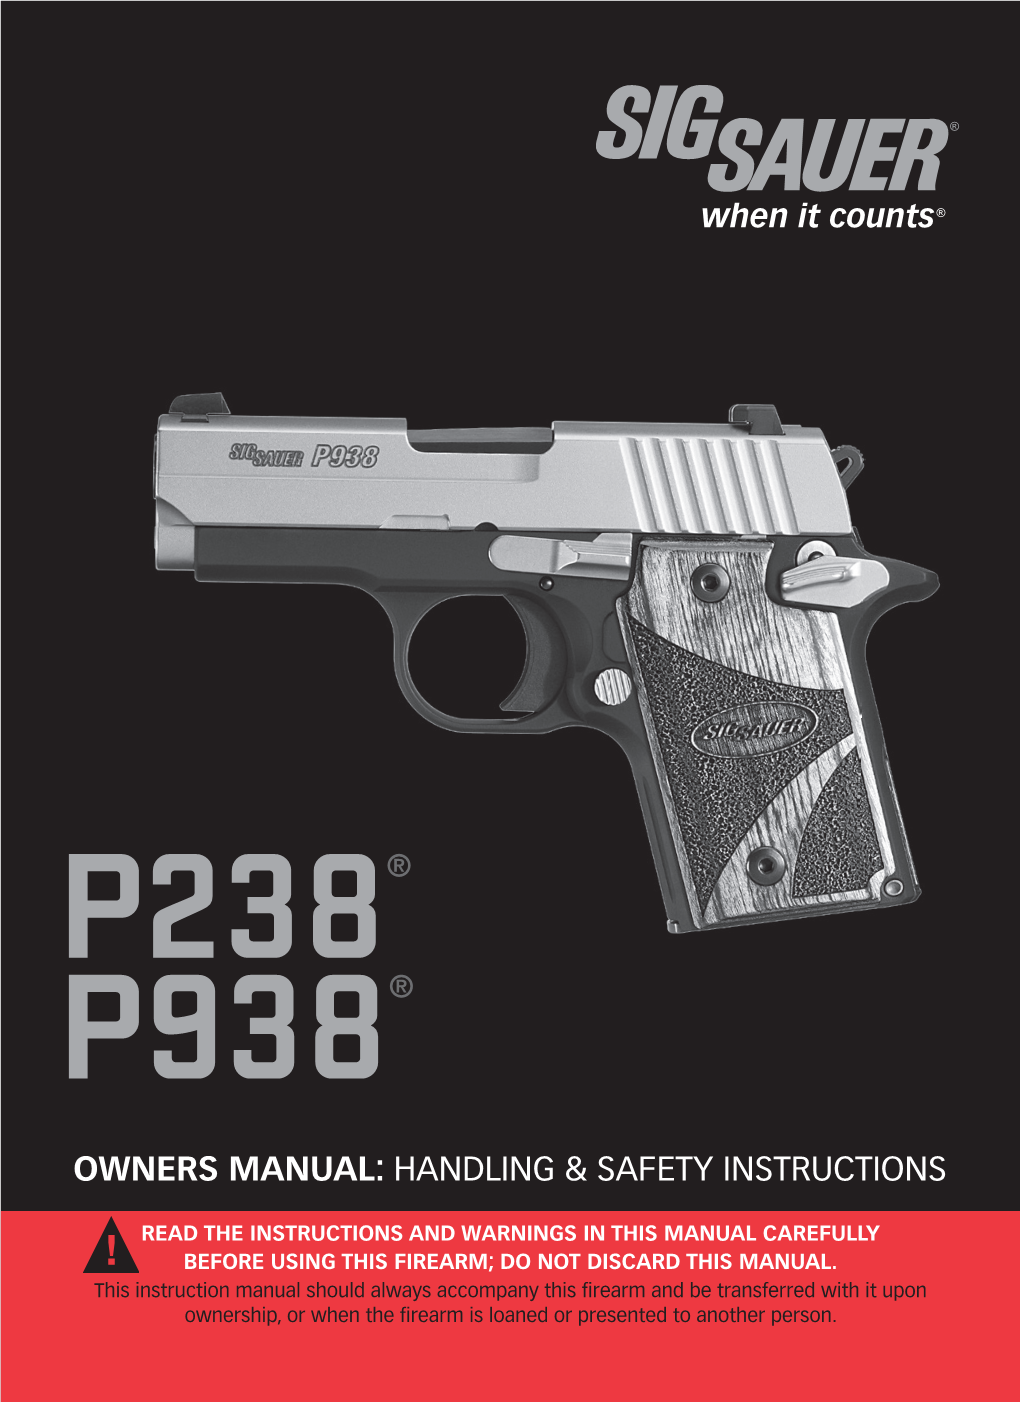 P238 & P938 Owner's Manual